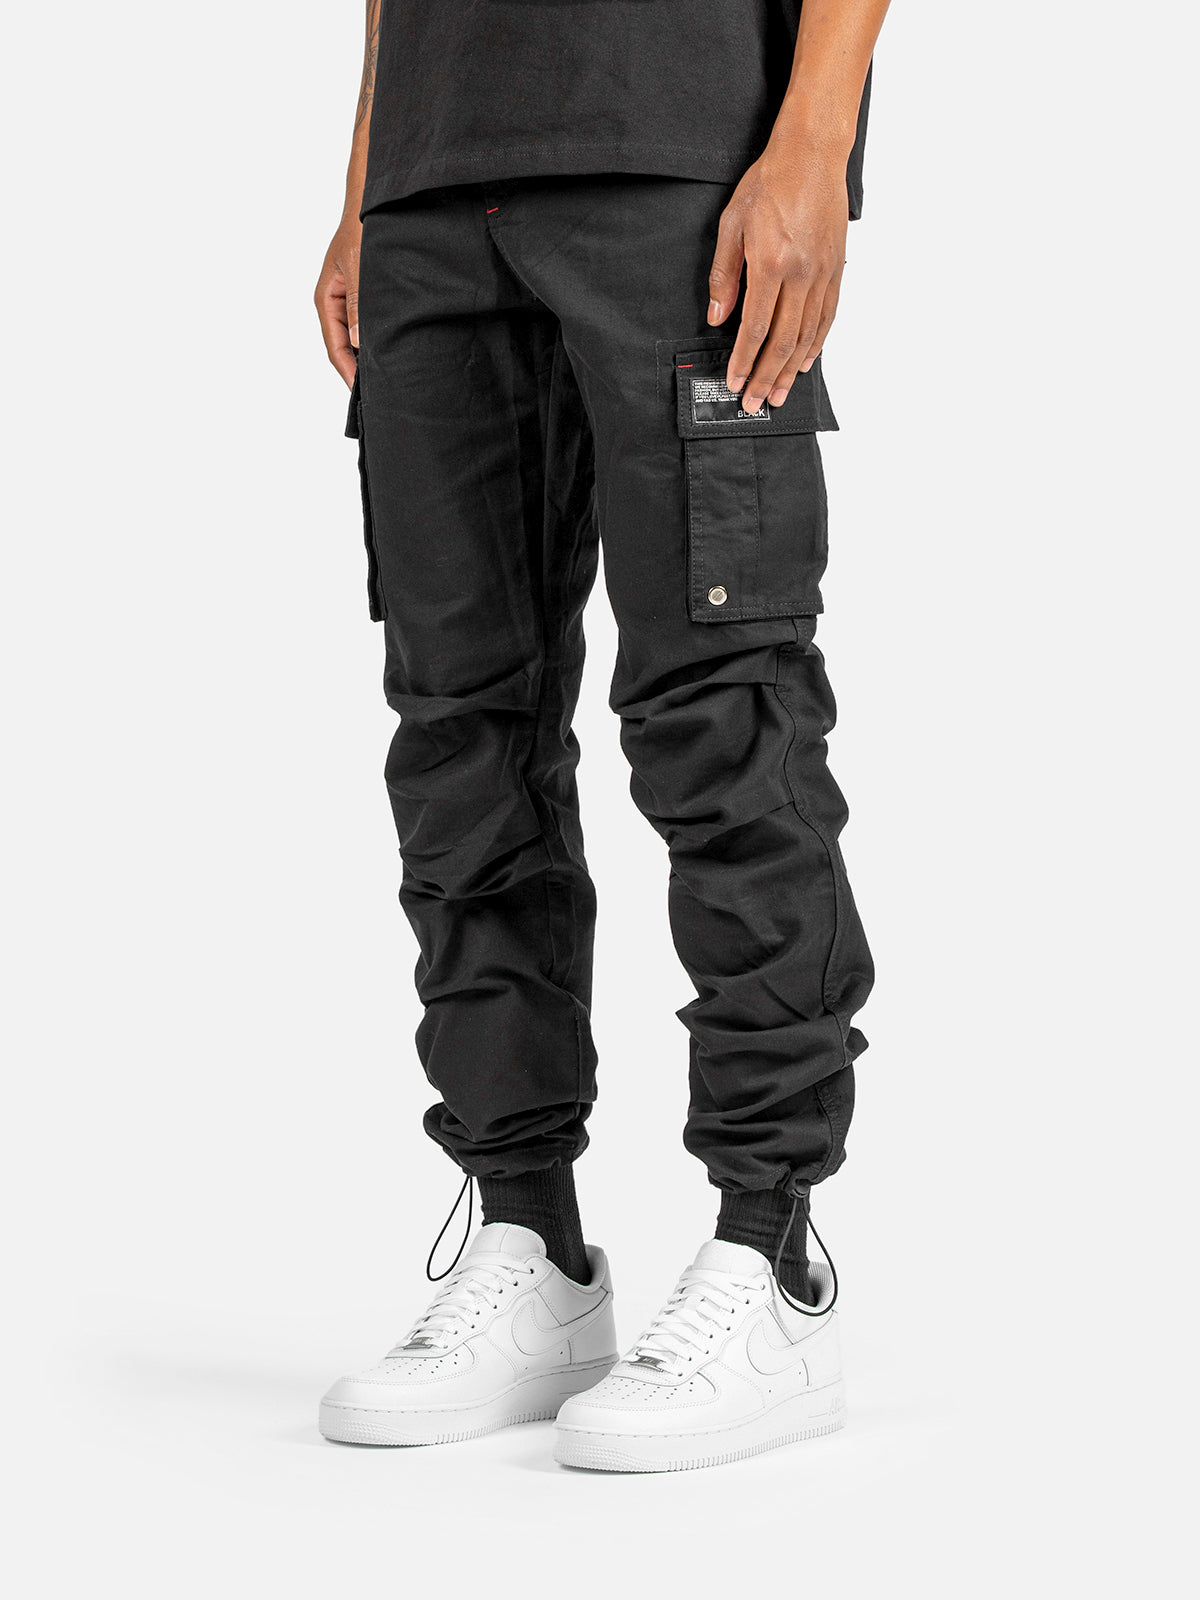 C9 Cargo Pants - Black | Blacktailor 28